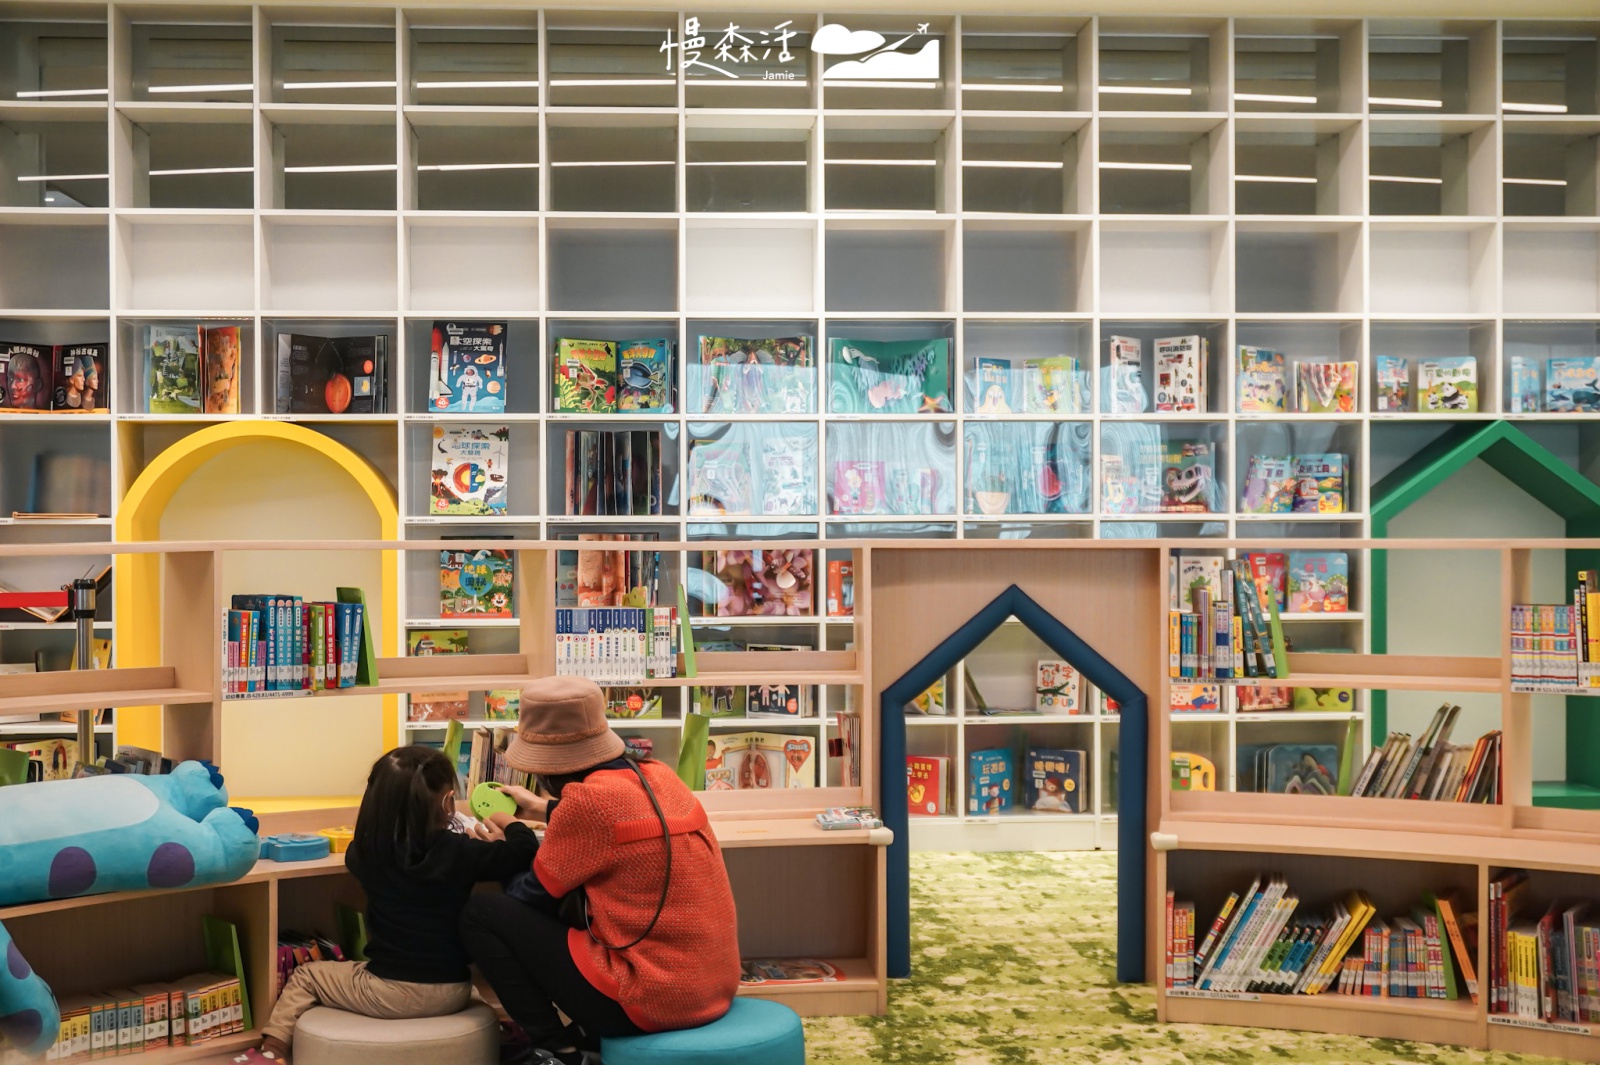 桃園市立圖書館新總館 館內3樓親子閱讀區